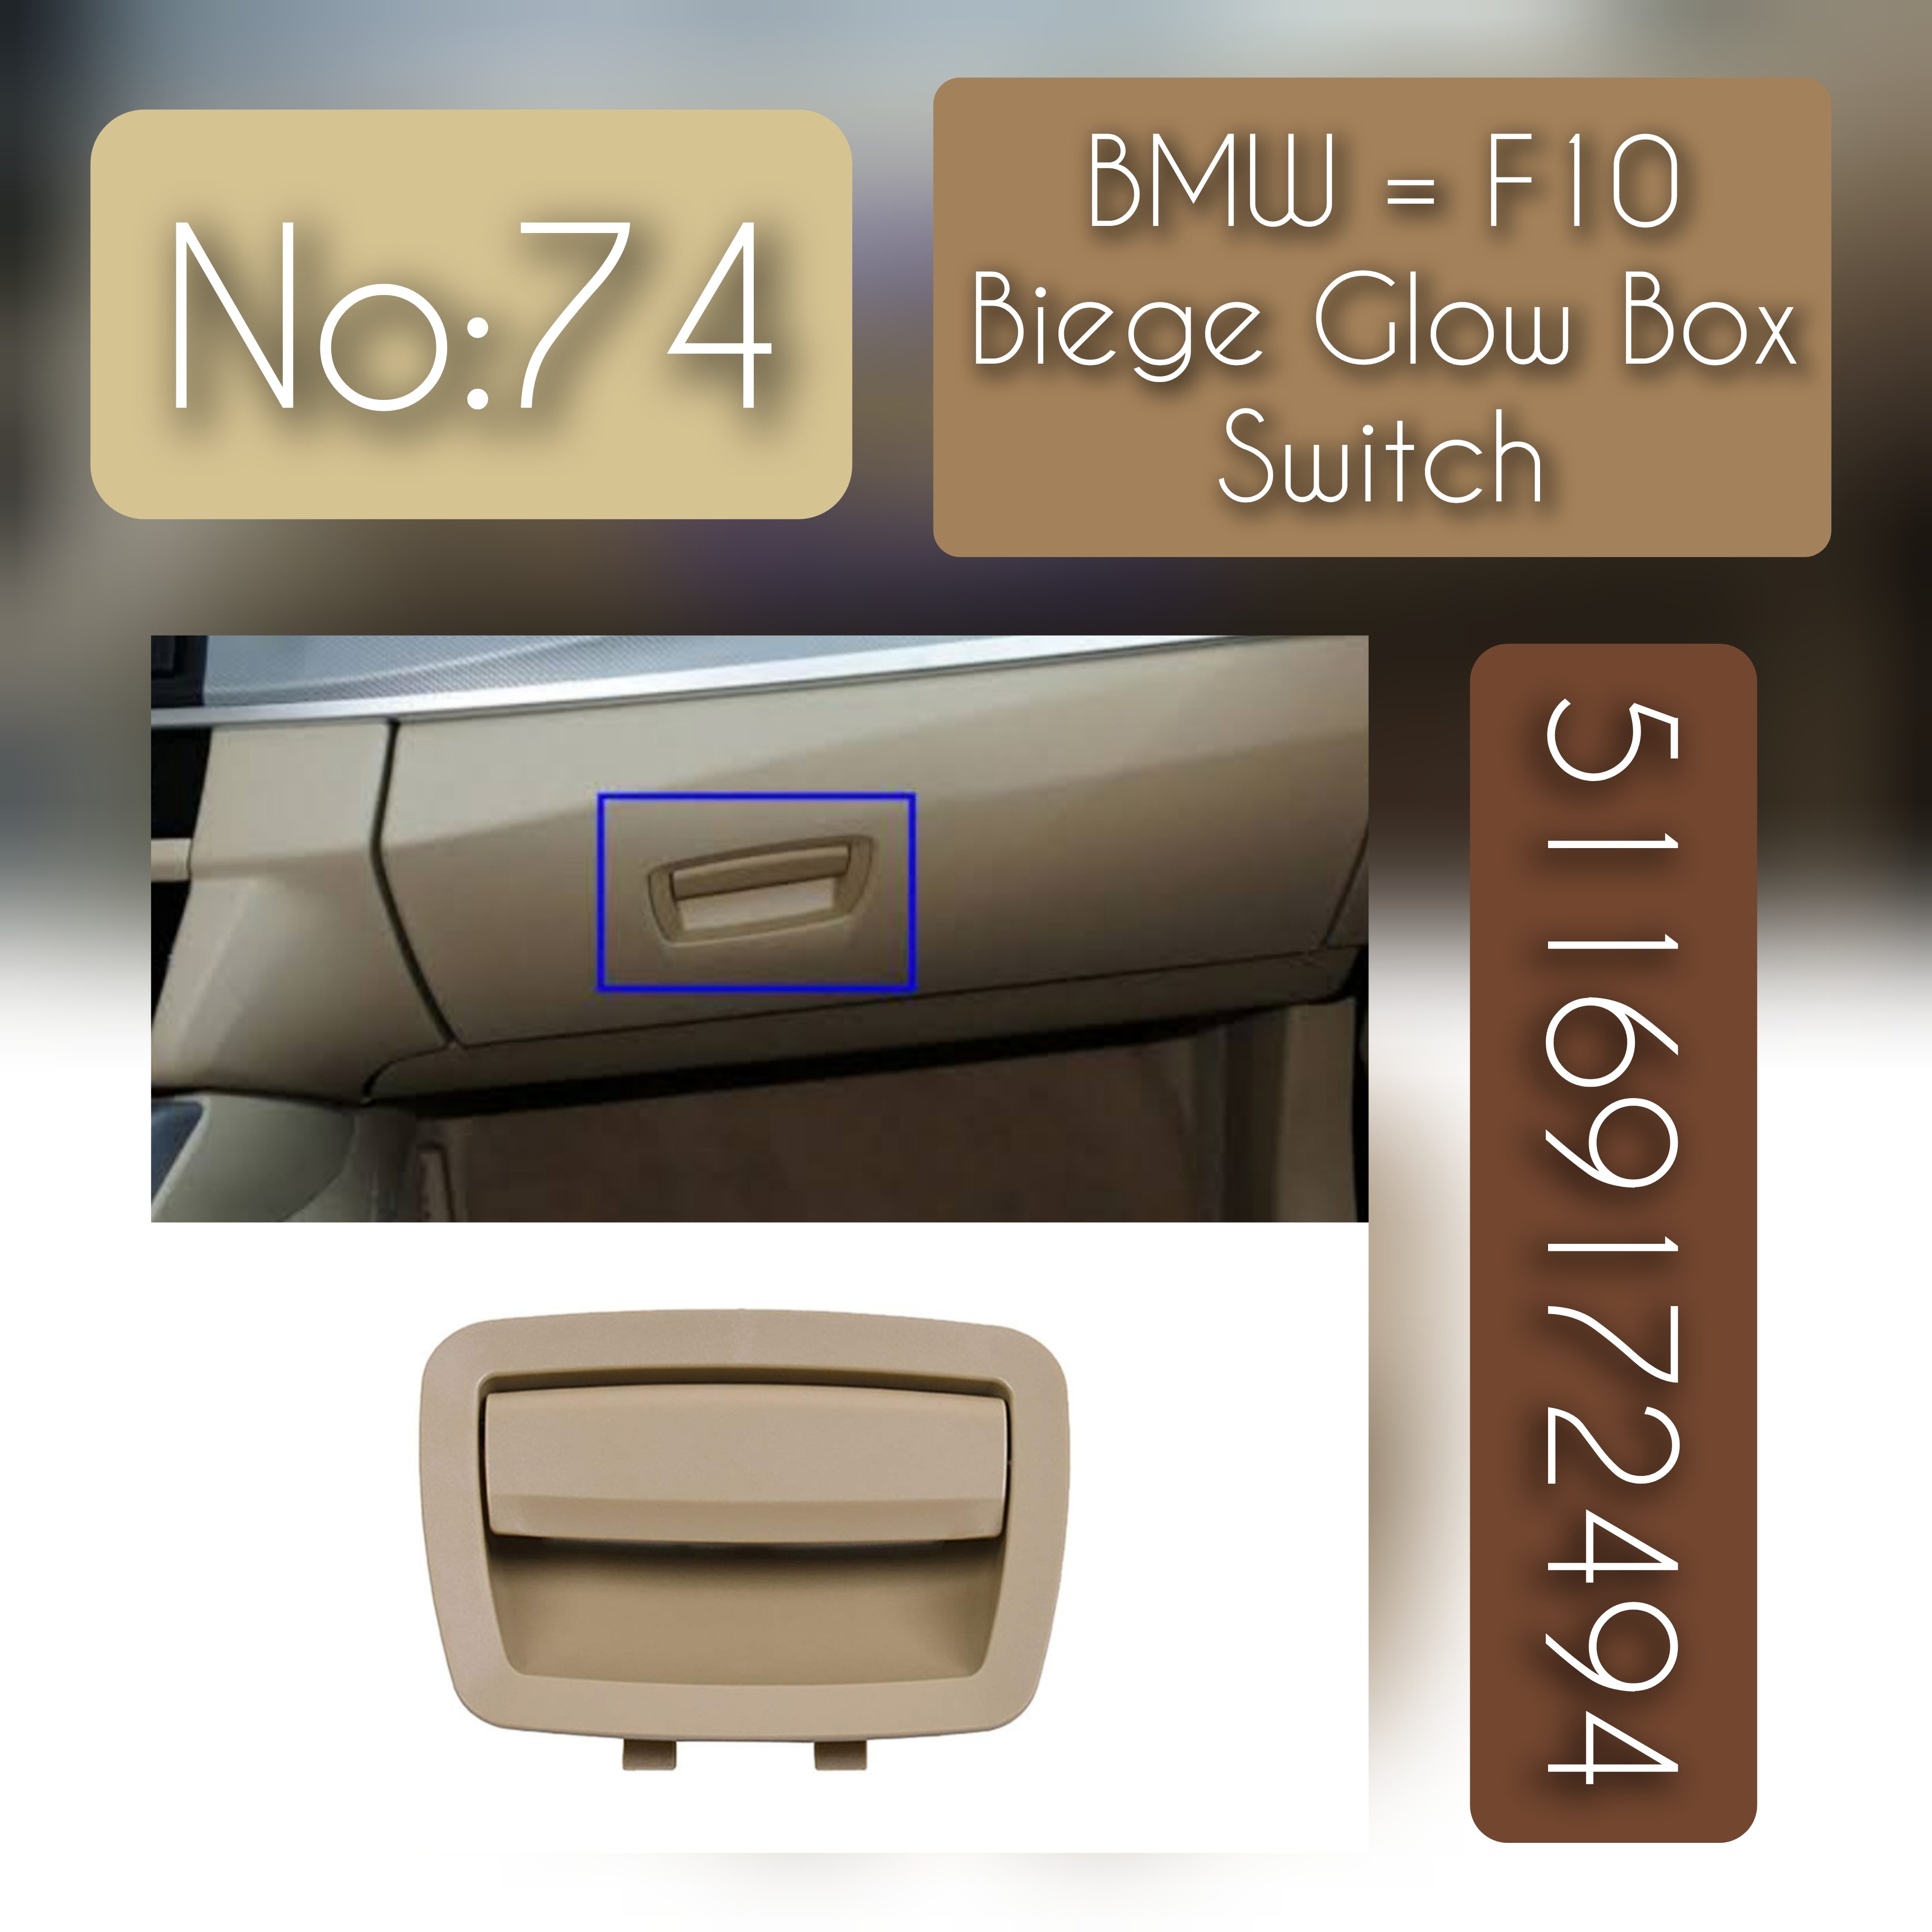 Beige Glow Box Switch 51169172494 Compatibility Across BMW 5 Series F10 & 7 Series F01 F02 Tag-SW-74